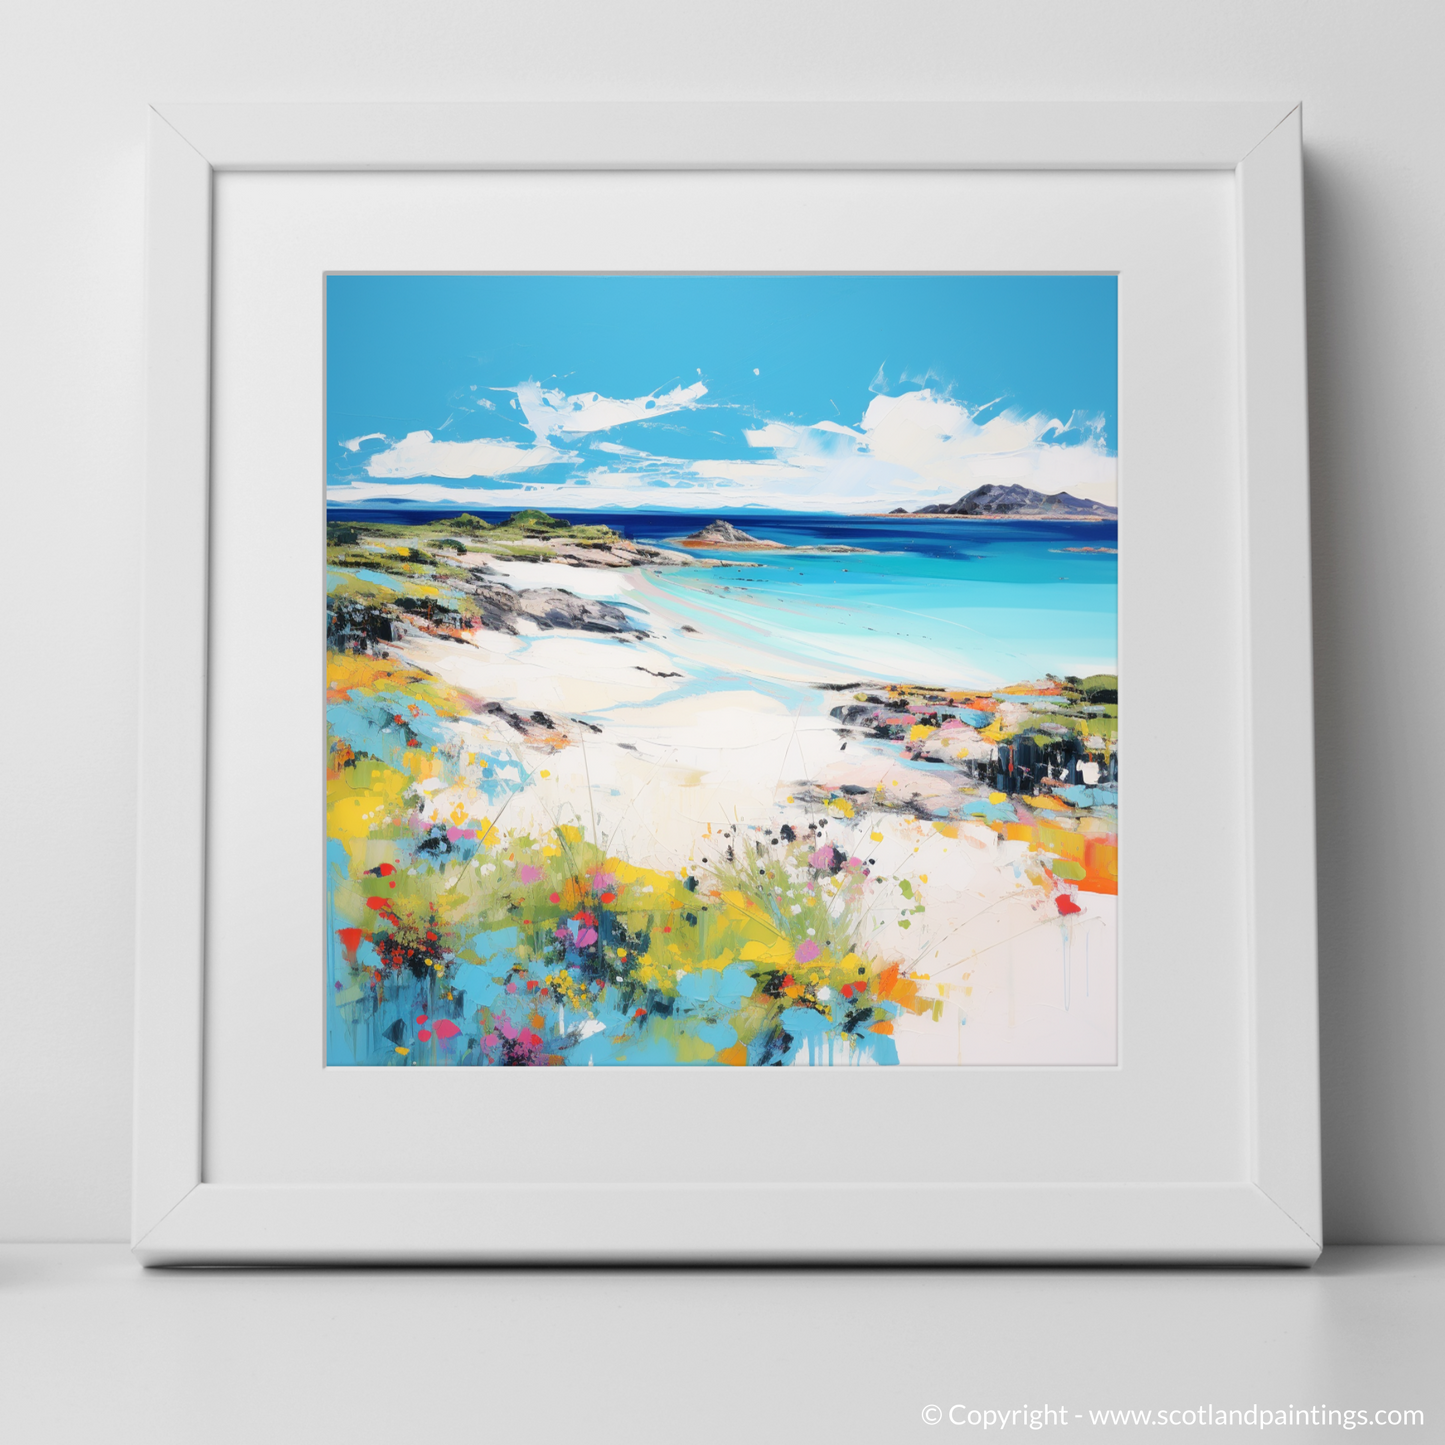 Art Print of Arisaig Beach, Arisaig in summer with a white frame